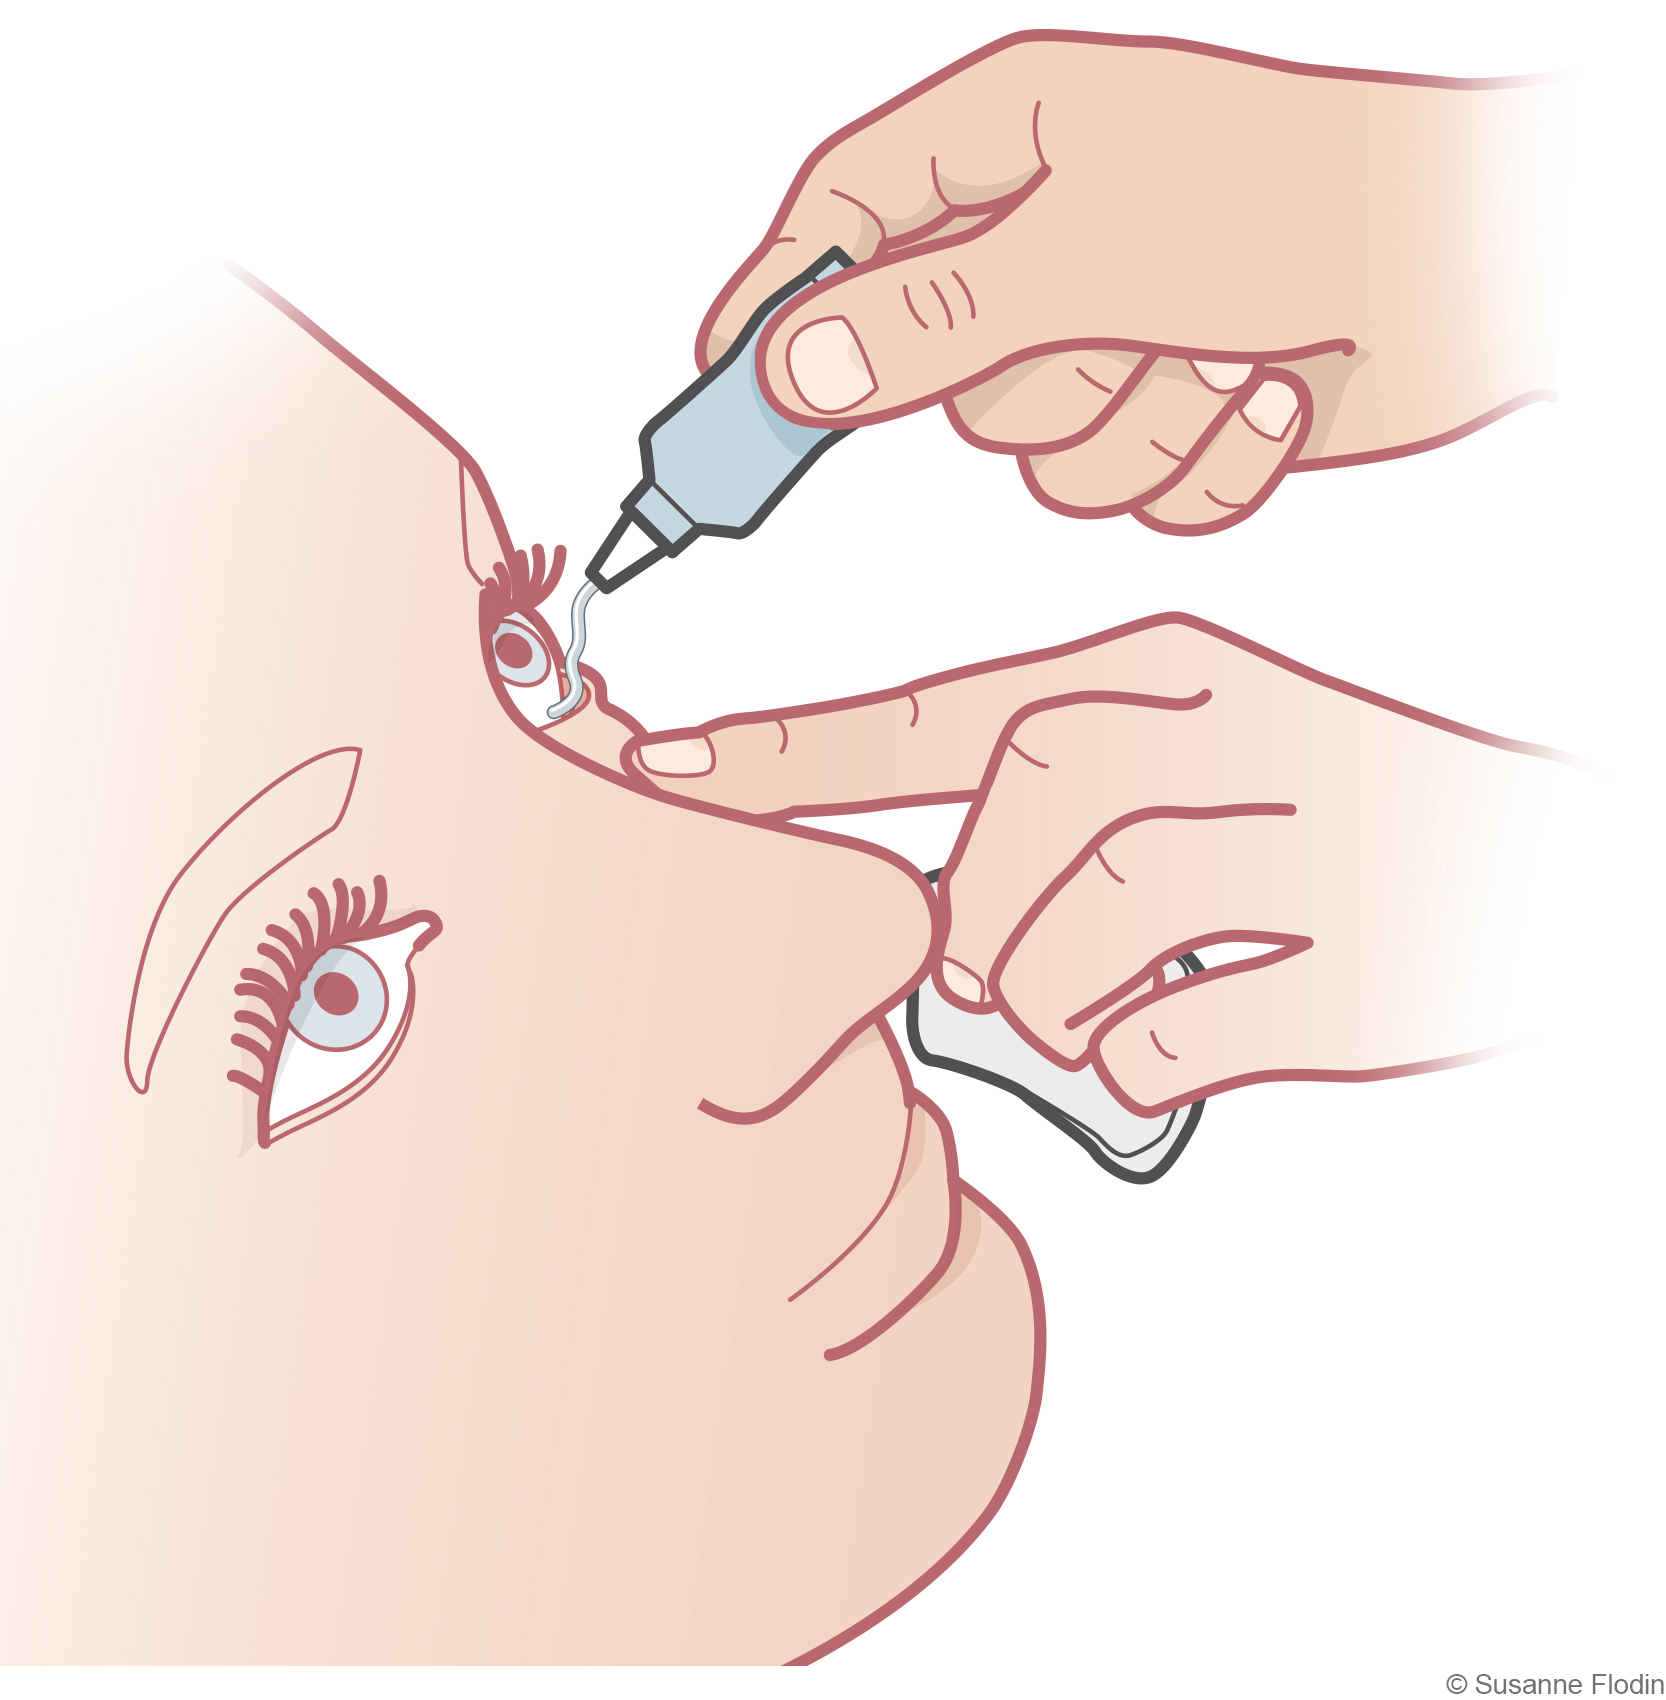 Bild som visar applicering av ögonsalva i ögat. 